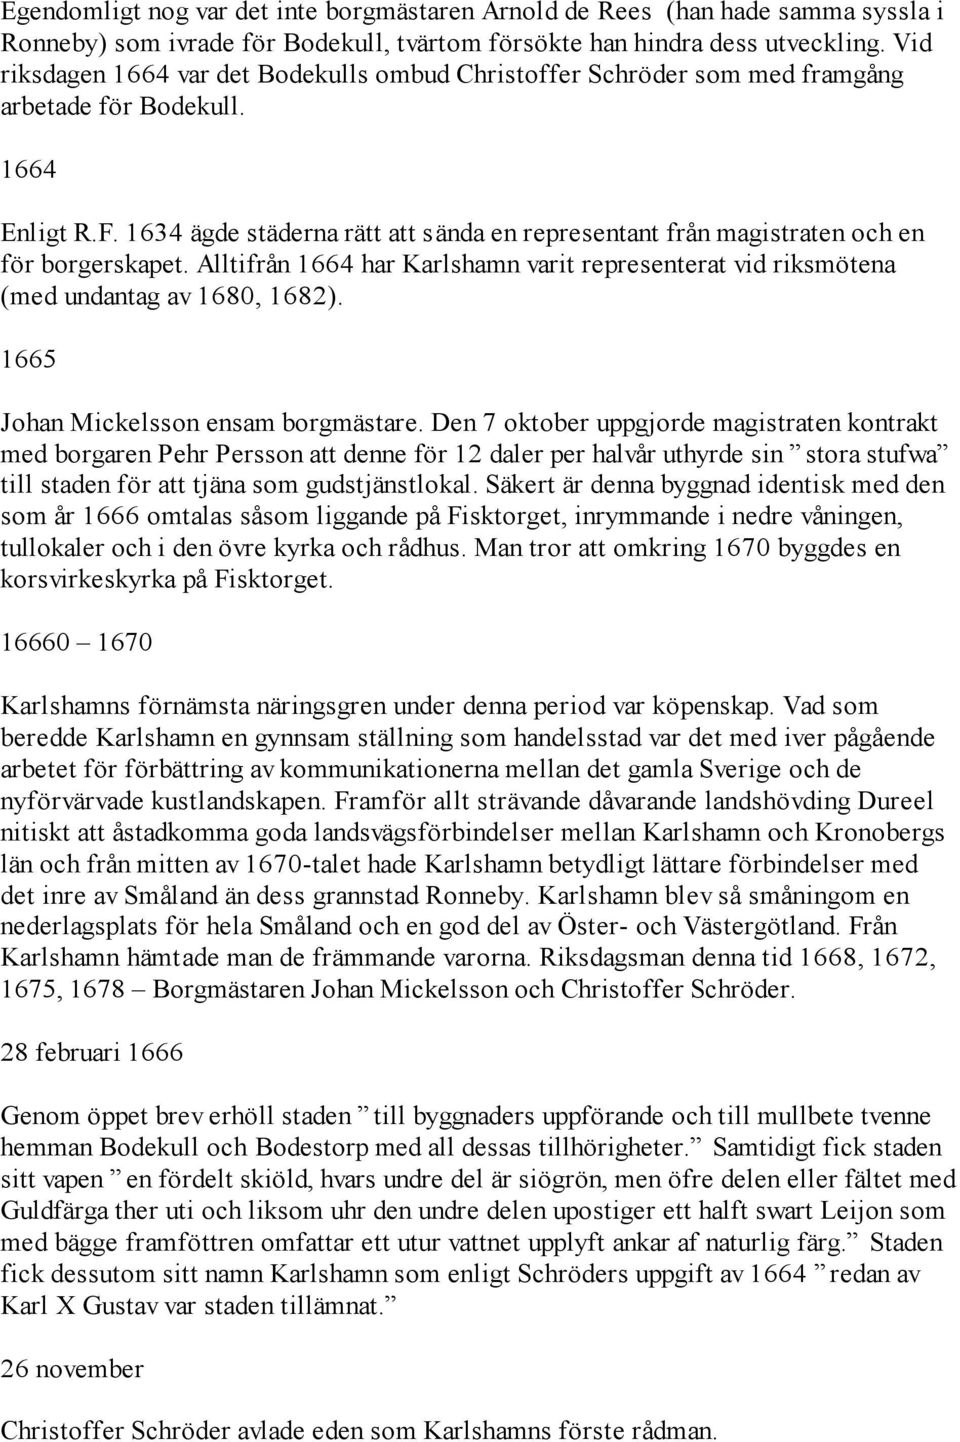 1634 ägde städerna rätt att sända en representant från magistraten och en för borgerskapet. Alltifrån 1664 har Karlshamn varit representerat vid riksmötena (med undantag av 1680, 1682).